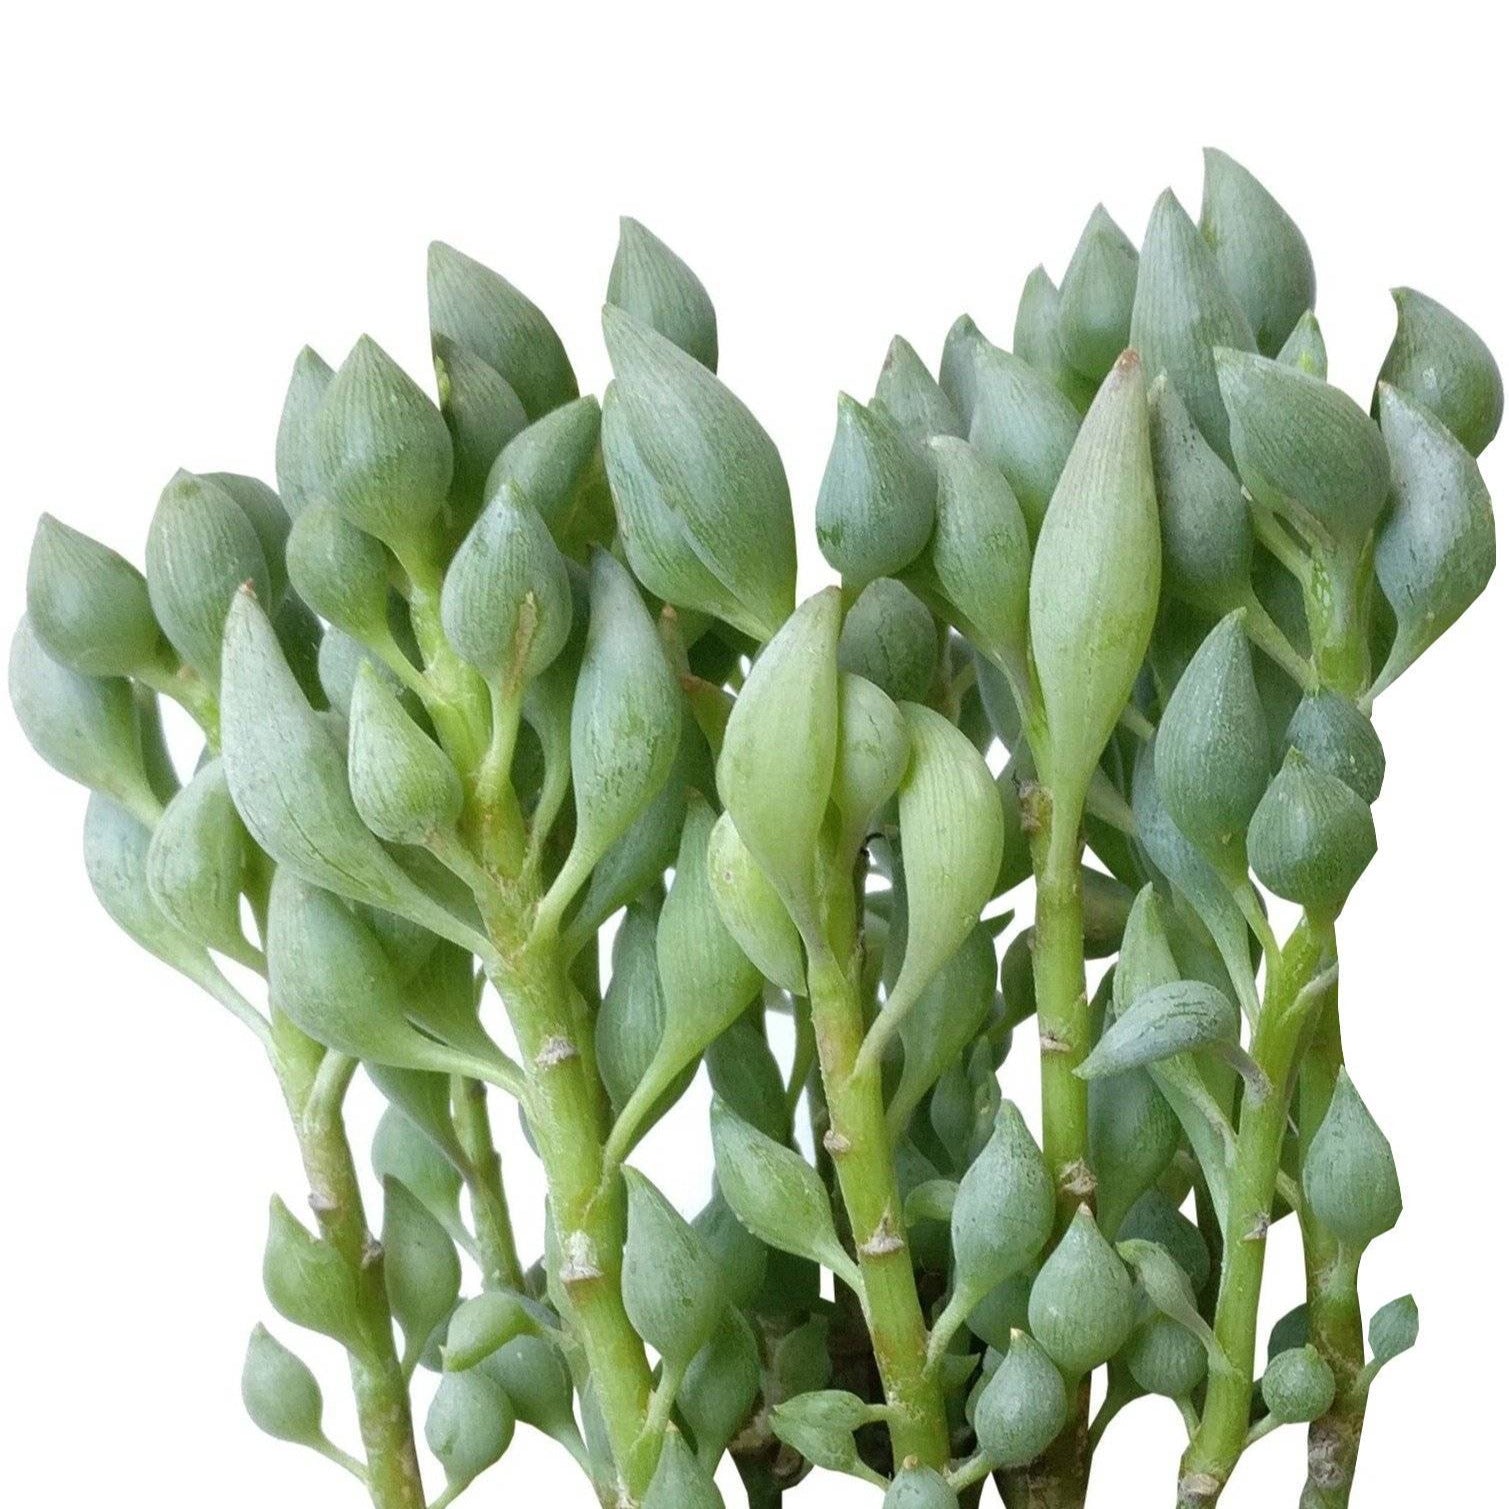 Senecio Citriformis, senecio plant, senecio succulent, senecio varieties, senecio succulent types, senecios, senecio species, senecio, senecio care